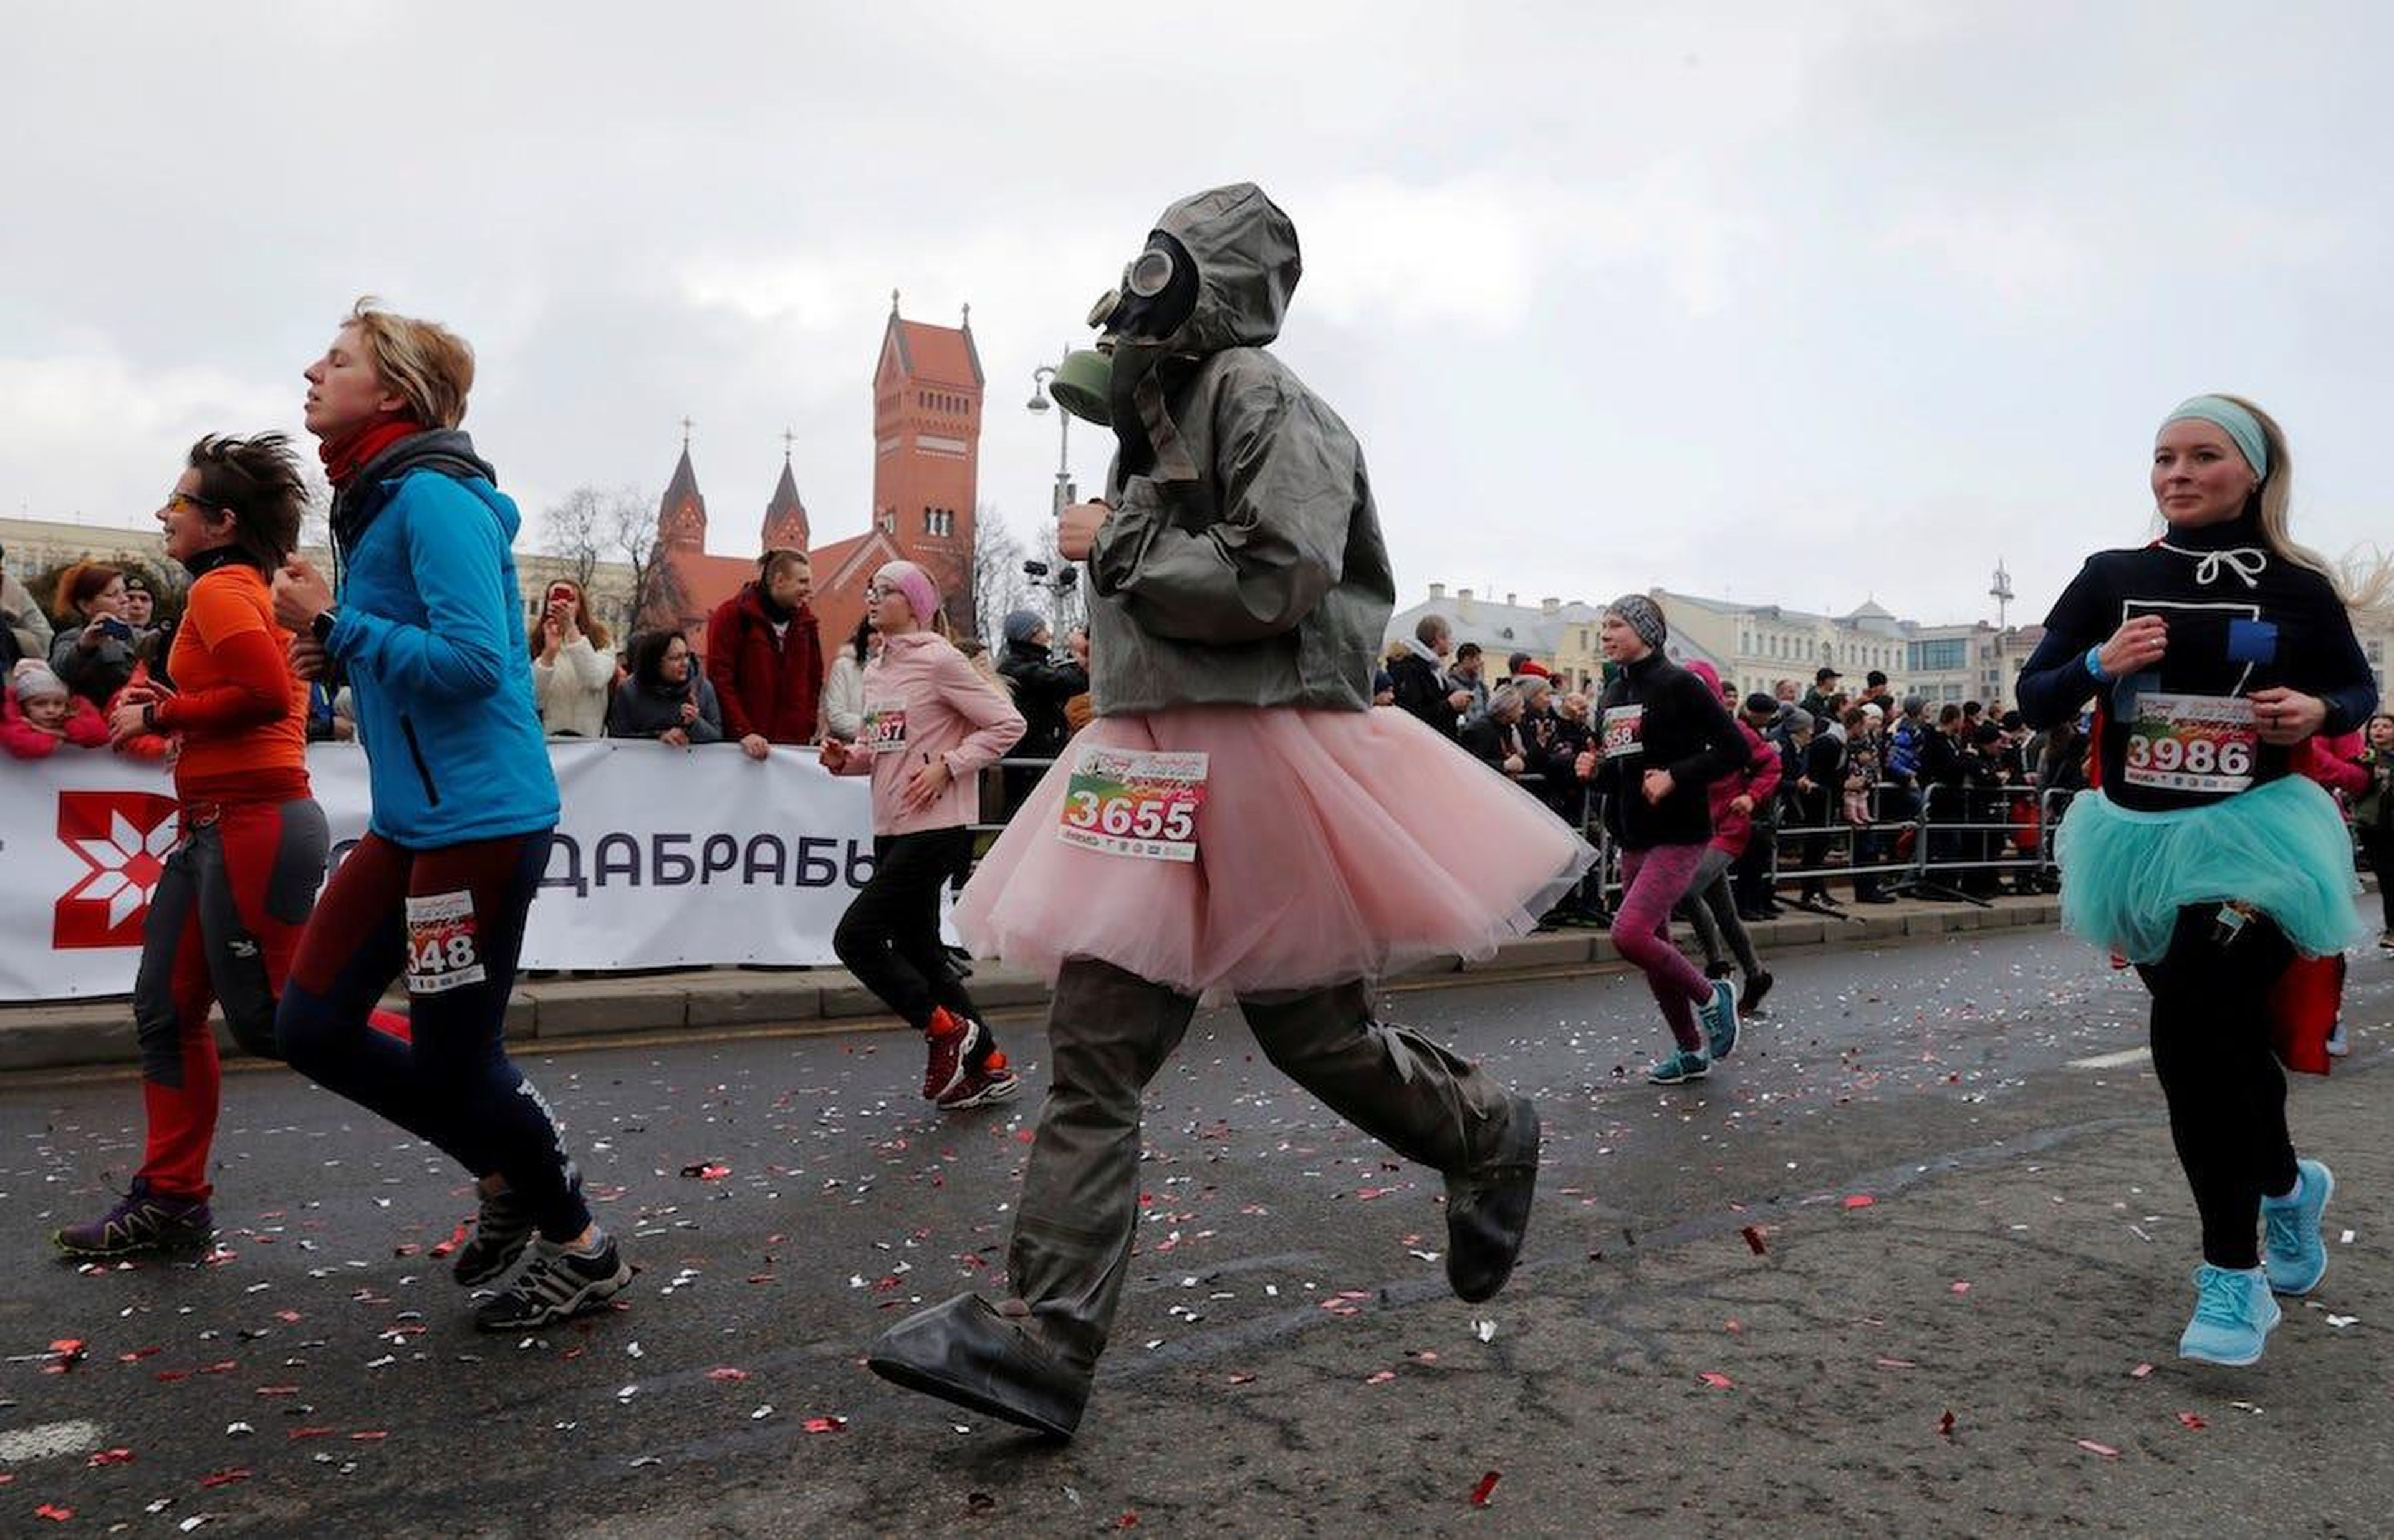 Women in Belarus, Minsk take part in a "Beauty Run" race.